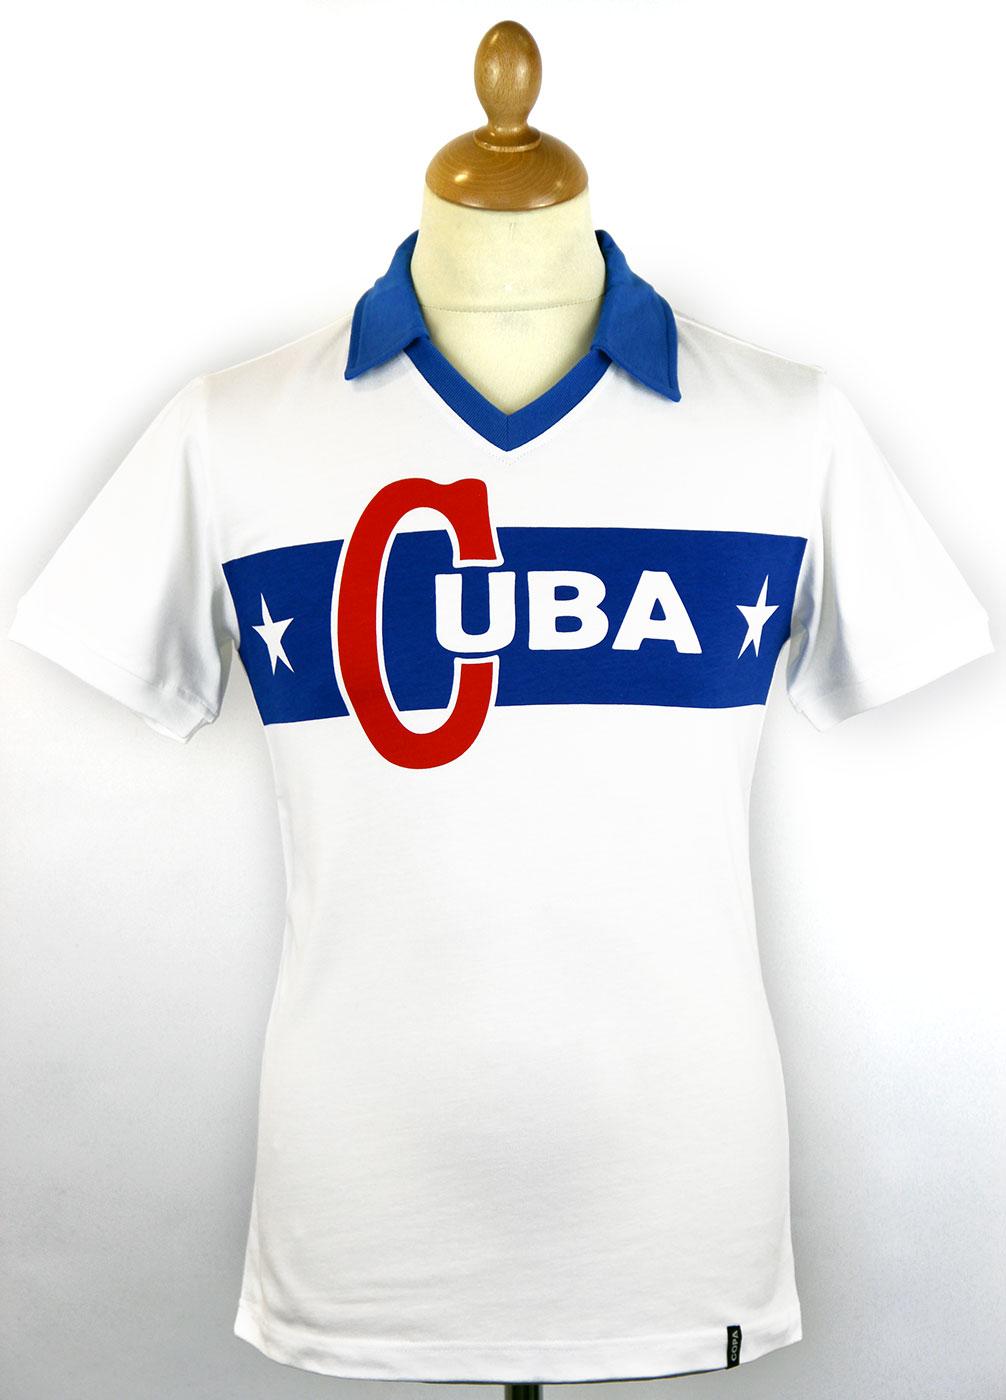 Cuba COPA Retro Sixties Vintage Style Football Top